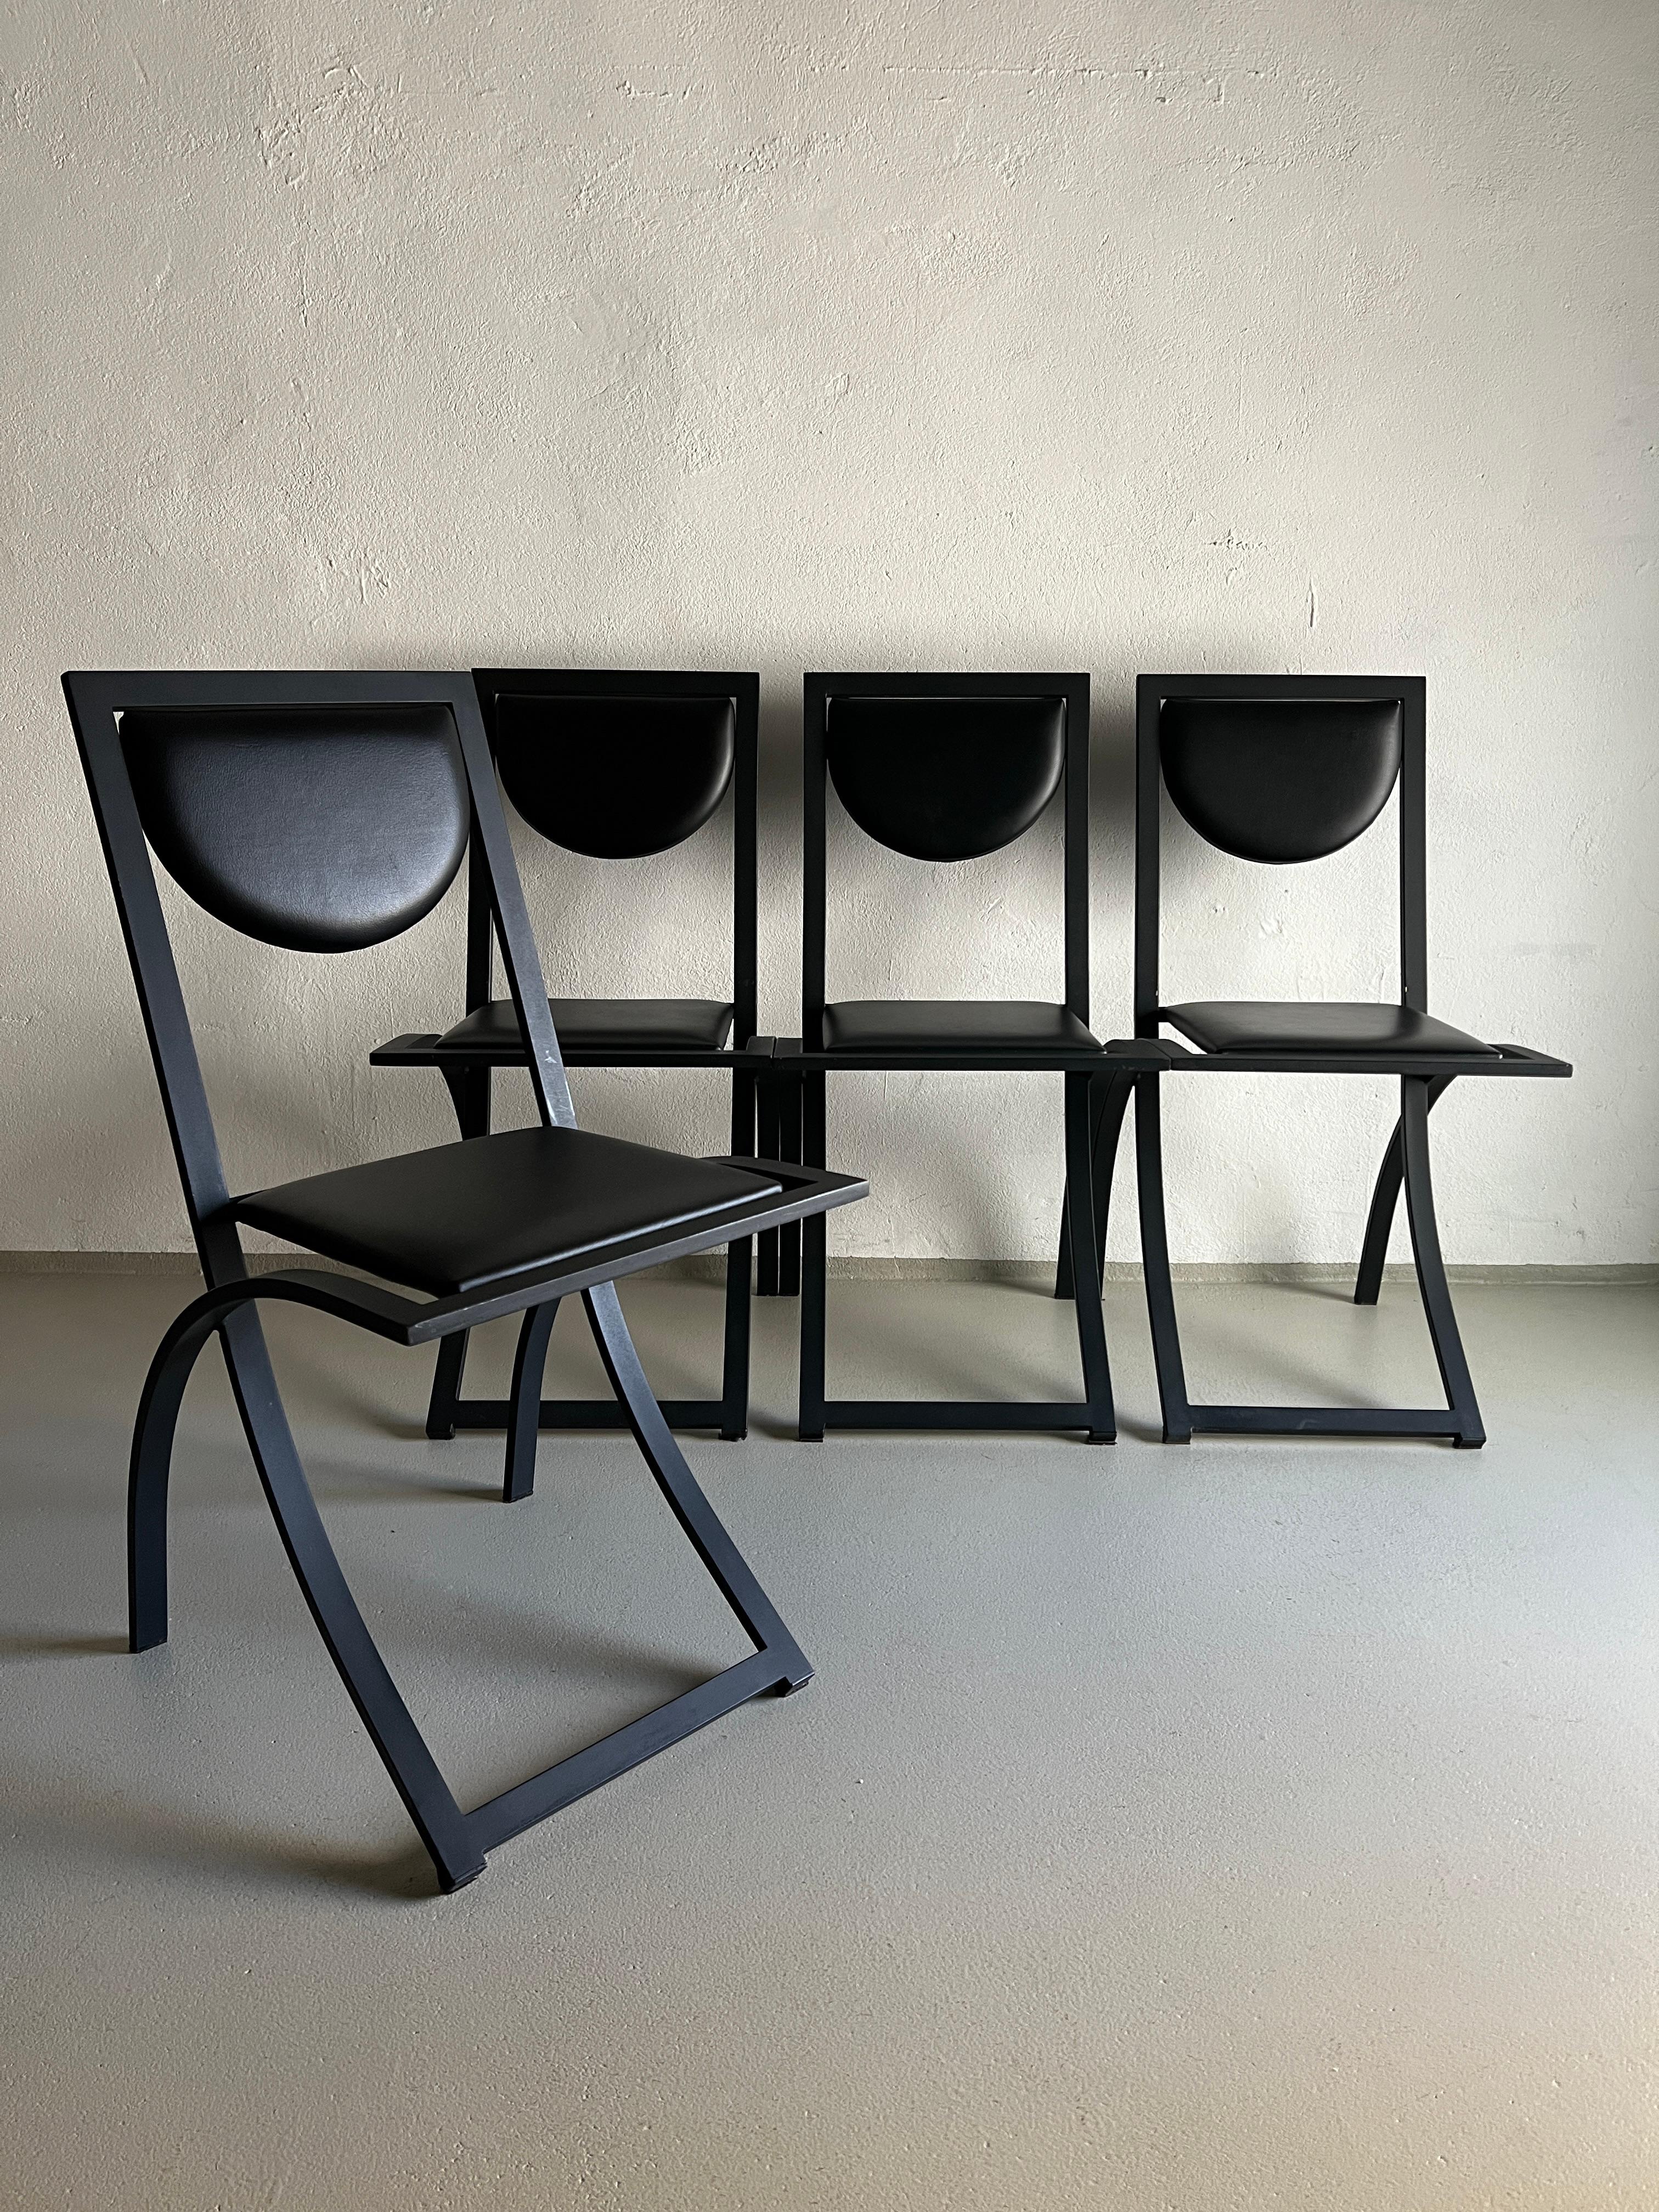 Ensemble de 4 chaises postmodernes conçues par Karl Friedrich Förster pour KFF Design dans les années 1980. Structure en métal peint noir mat avec revêtement en similicuir.

Informations complémentaires :
Pays de fabrication : Allemagne
Période de